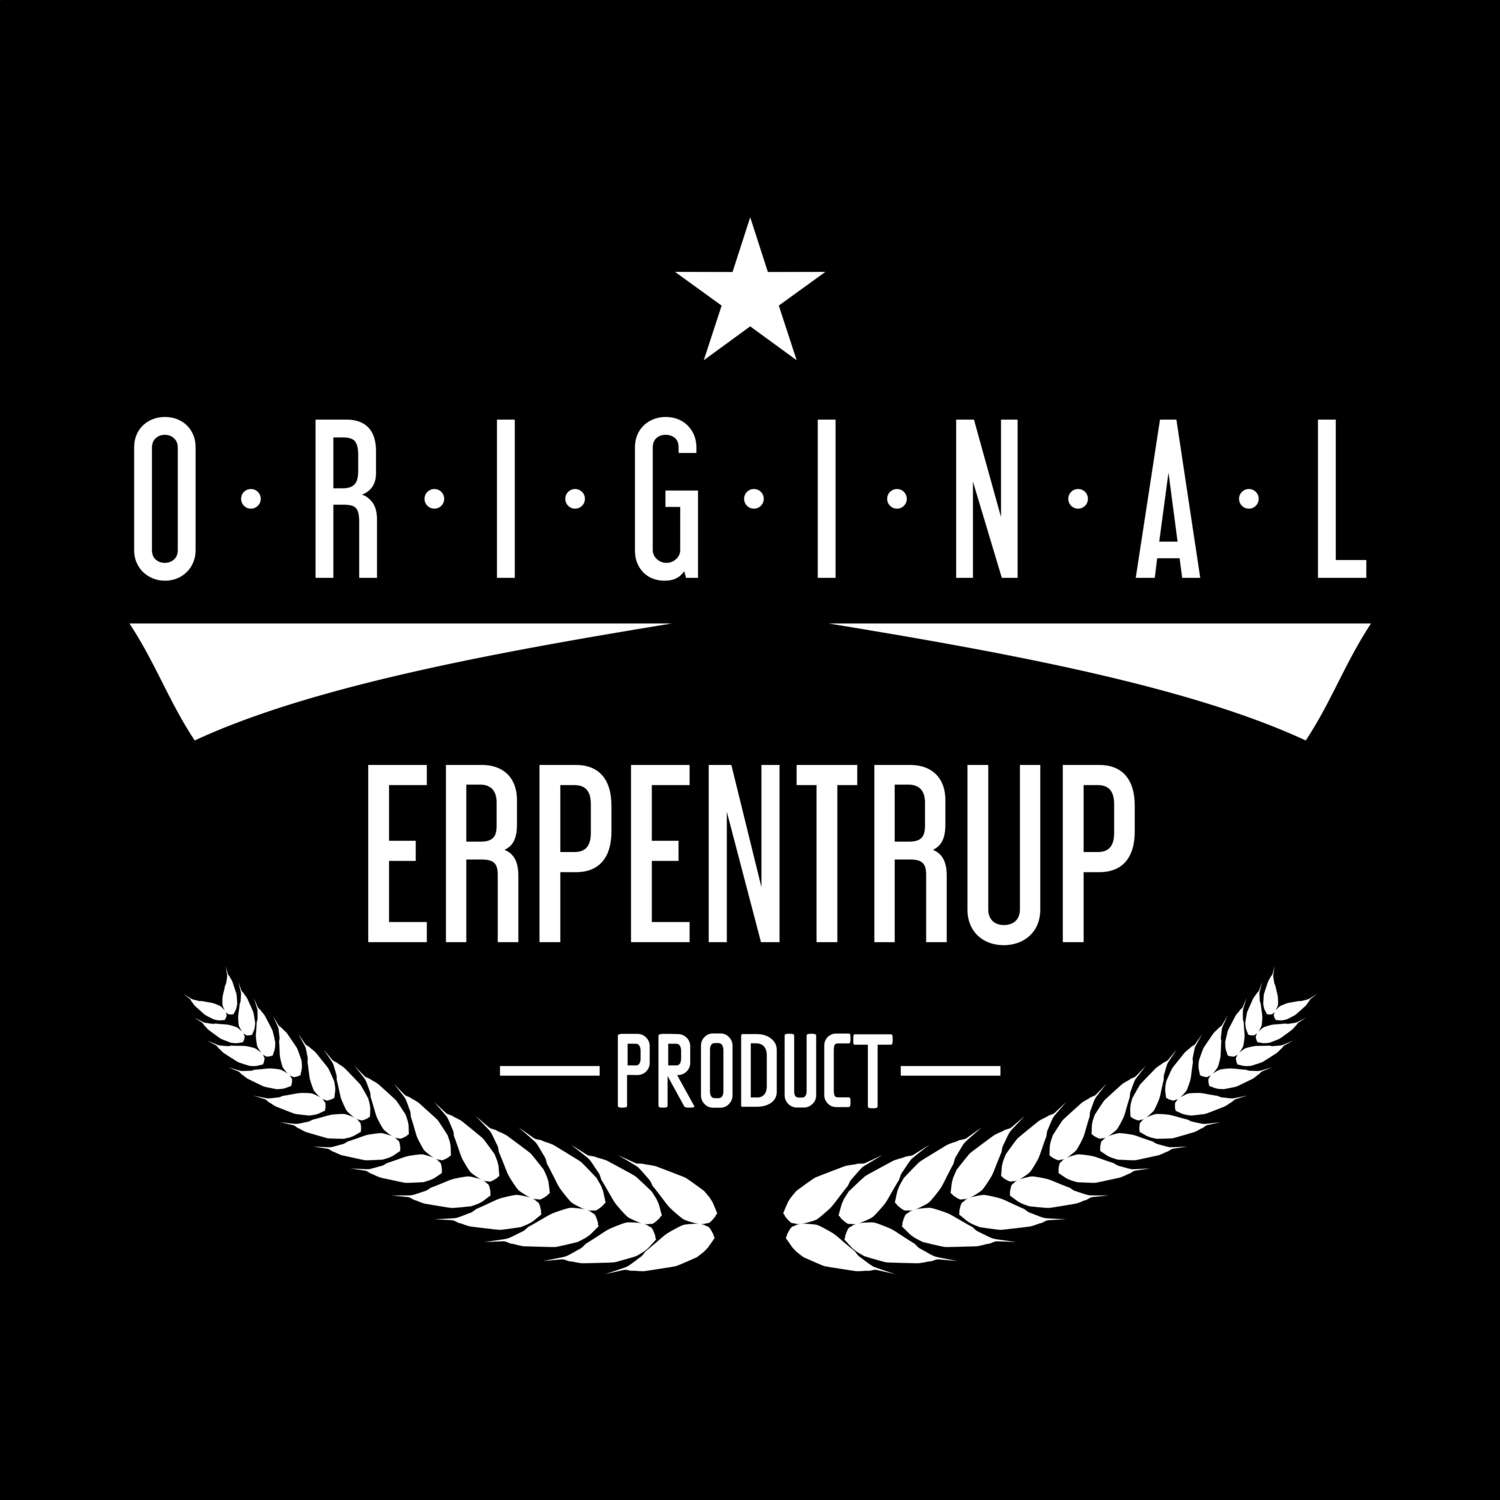 Erpentrup T-Shirt »Original Product«